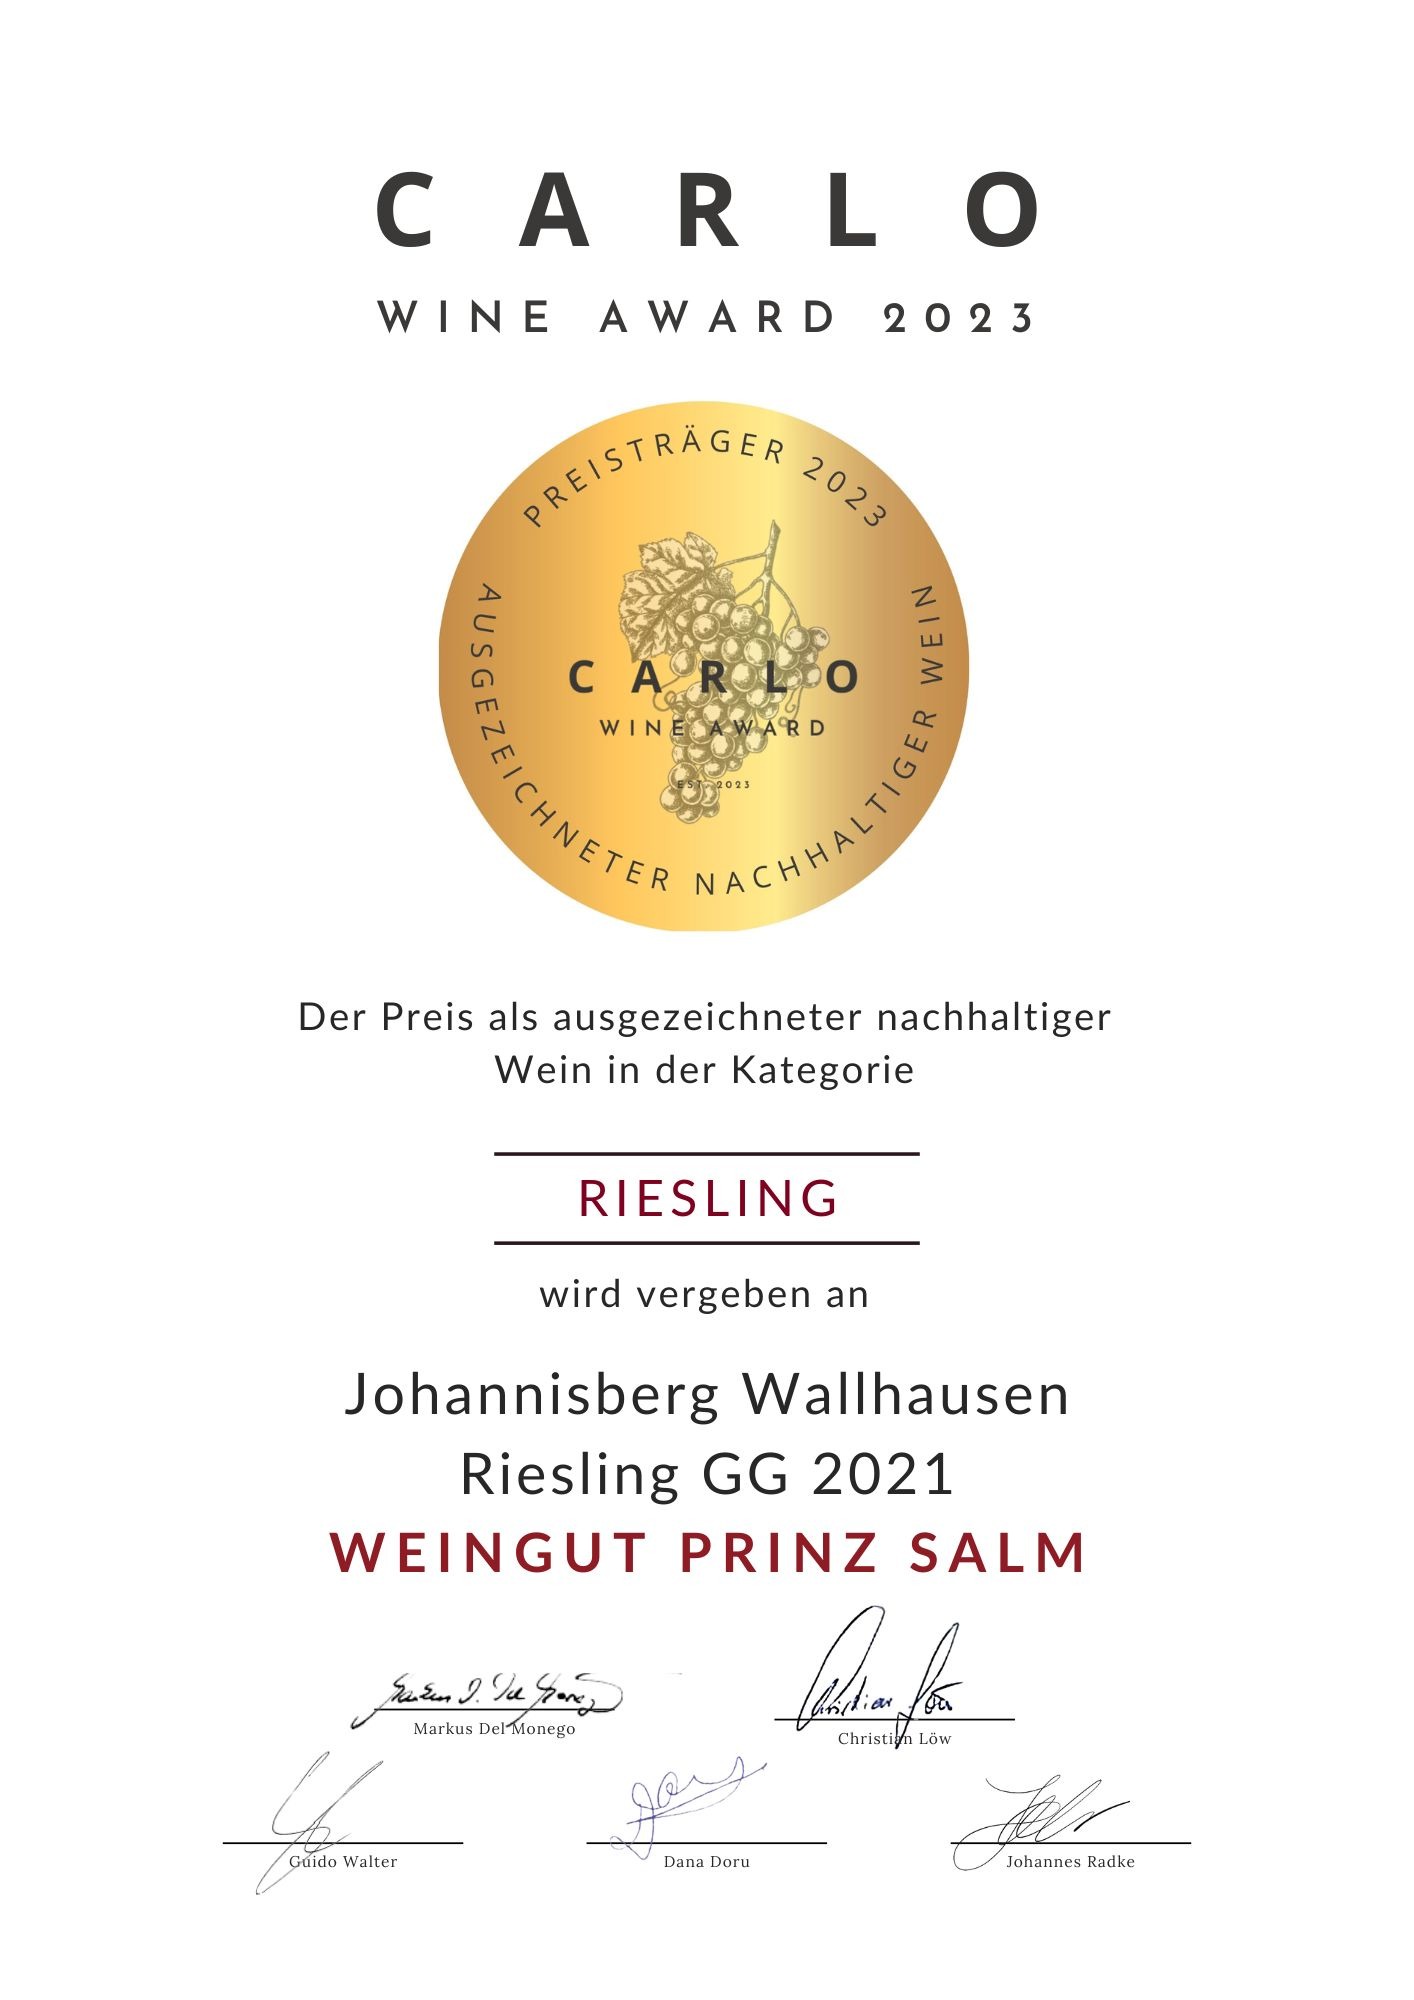 Auszeichnung mit dem Carlo Wine Award